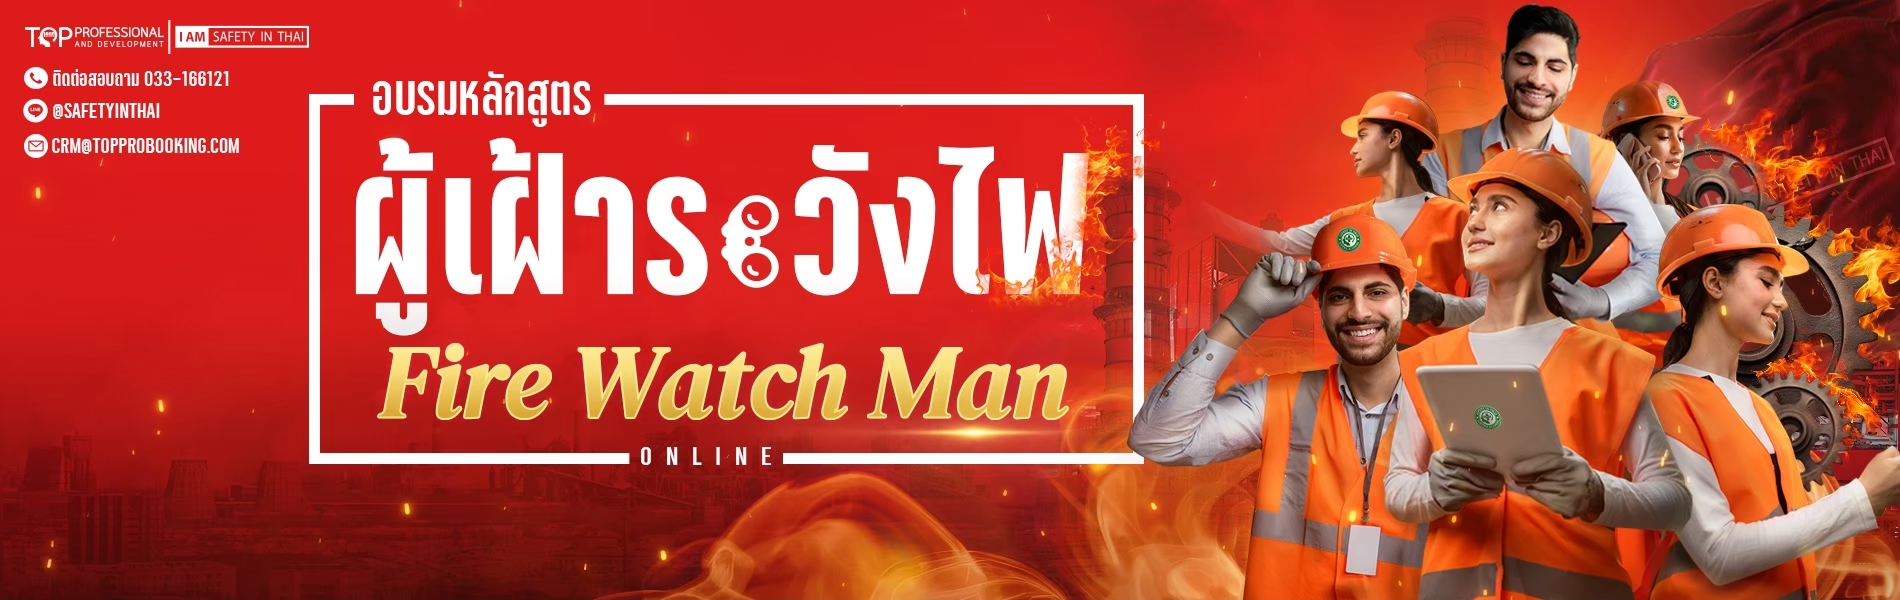 Fire Watch Man